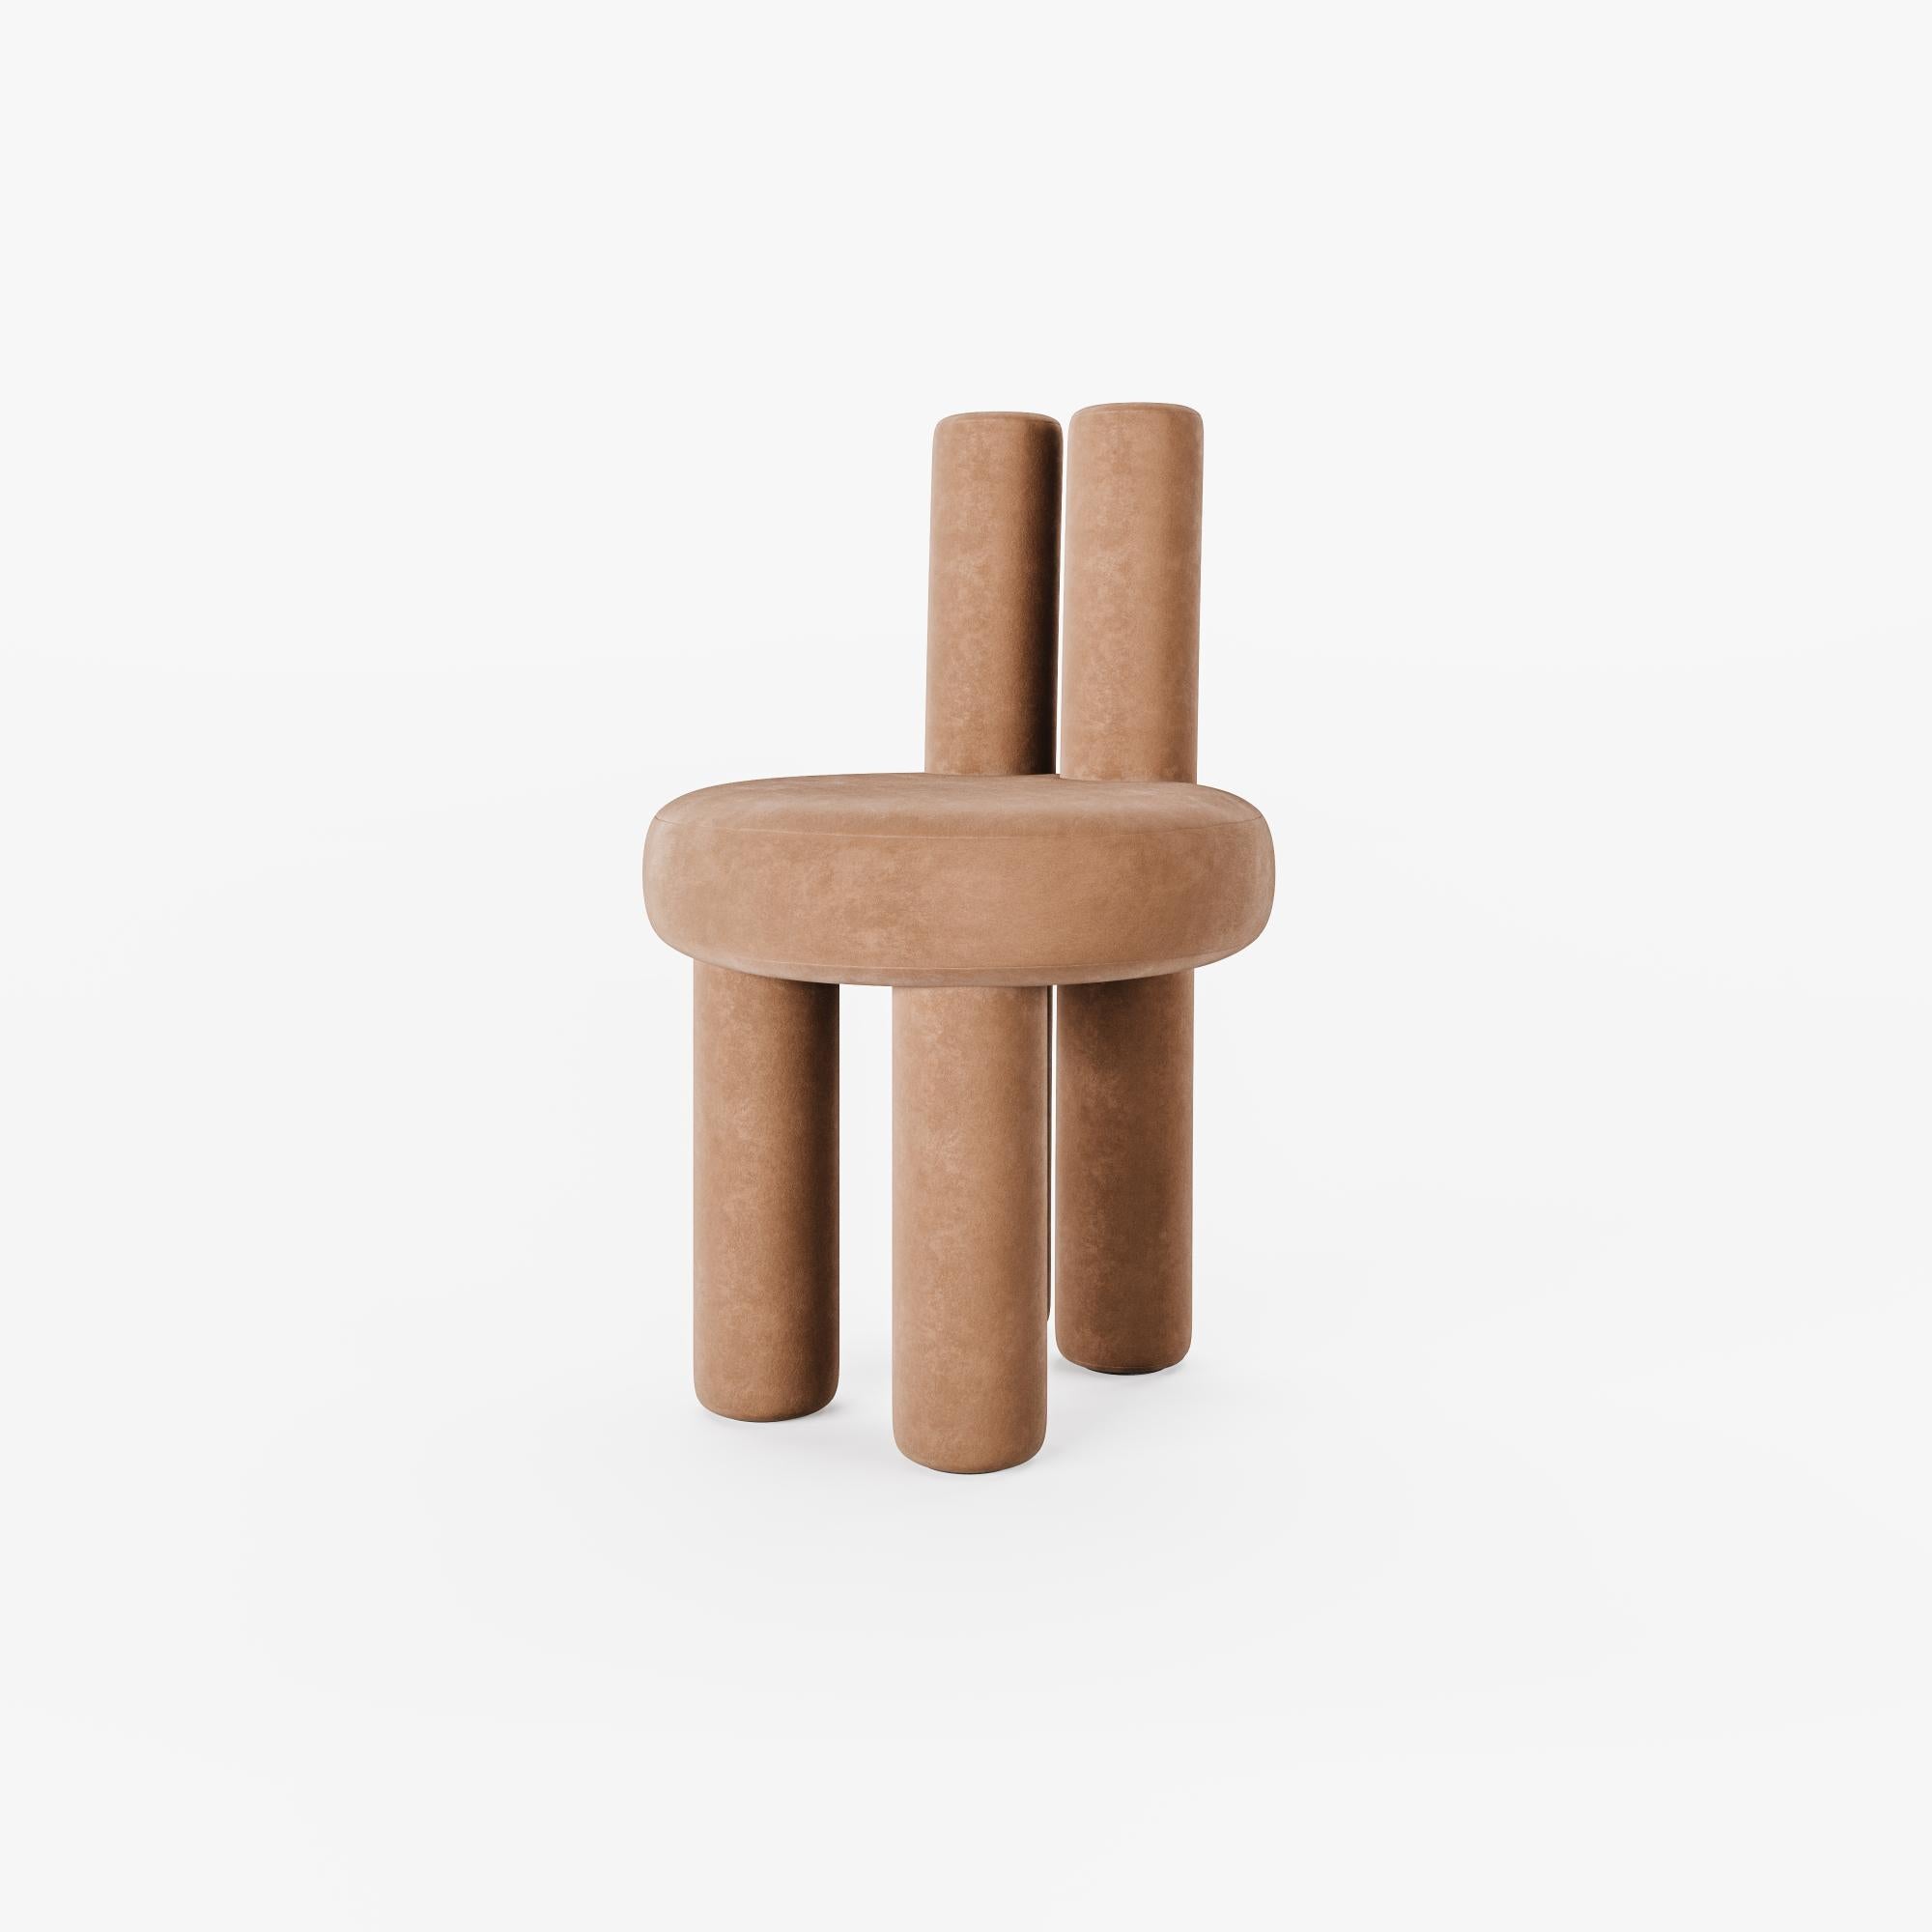 Satz von 4 Salvador-Stühlen aus Terrakota von Nelson Araujo
Abmessungen: T 47 x H 75 cm
MATERIALIEN: Holz, Samt und Schaumstoff.
Auch verfügbar: Misty Beige Farbe verfügbar,

Nelson de Araújo, hat einen Abschluss in Produktdesign. Seine Leidenschaft